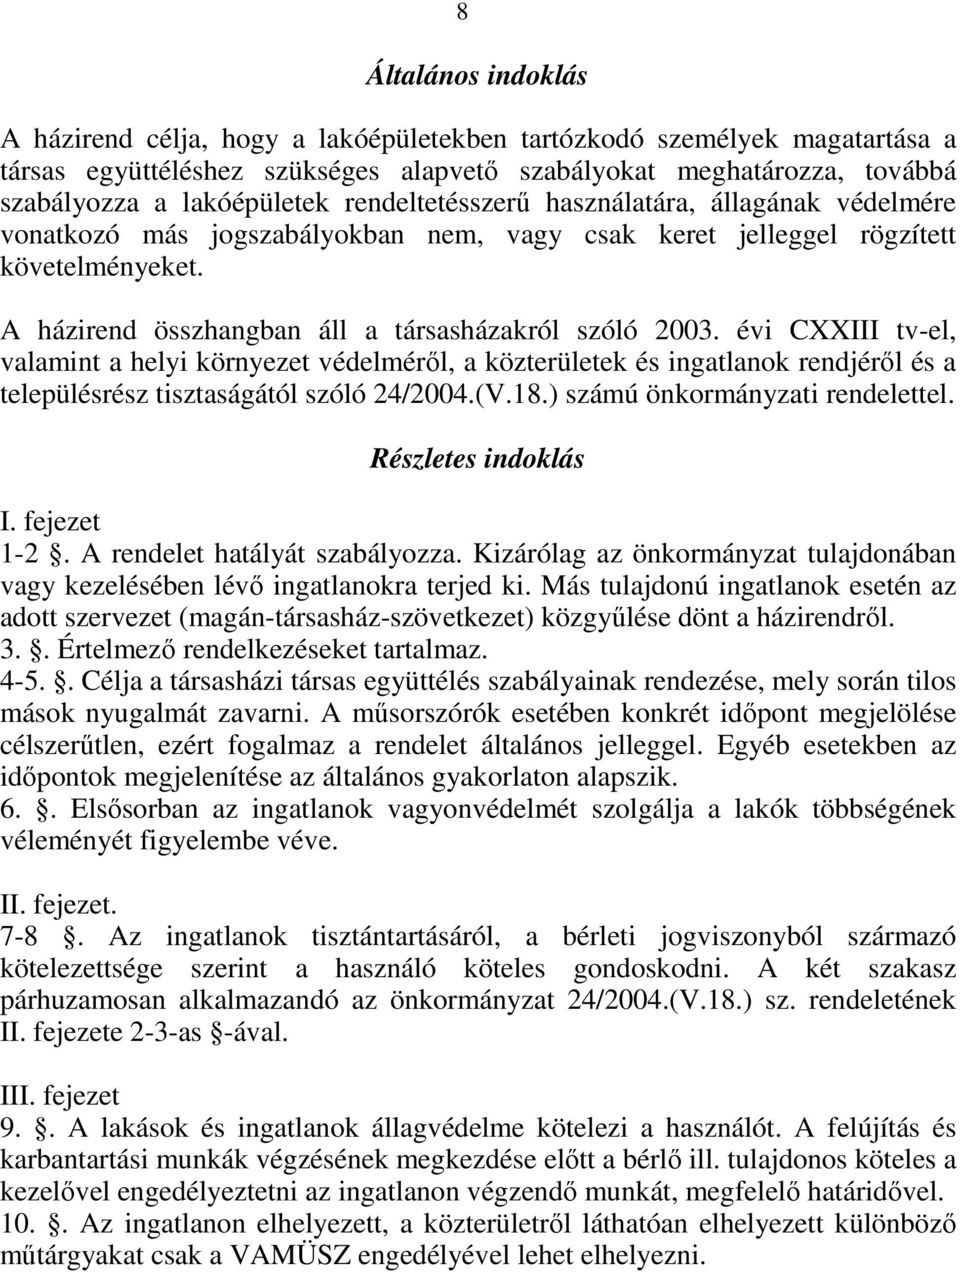 évi CXXIII tv-el, valamint a helyi környezet védelmérıl, a közterületek és ingatlanok rendjérıl és a településrész tisztaságától szóló 24/2004.(V.18.) számú önkormányzati rendelettel.